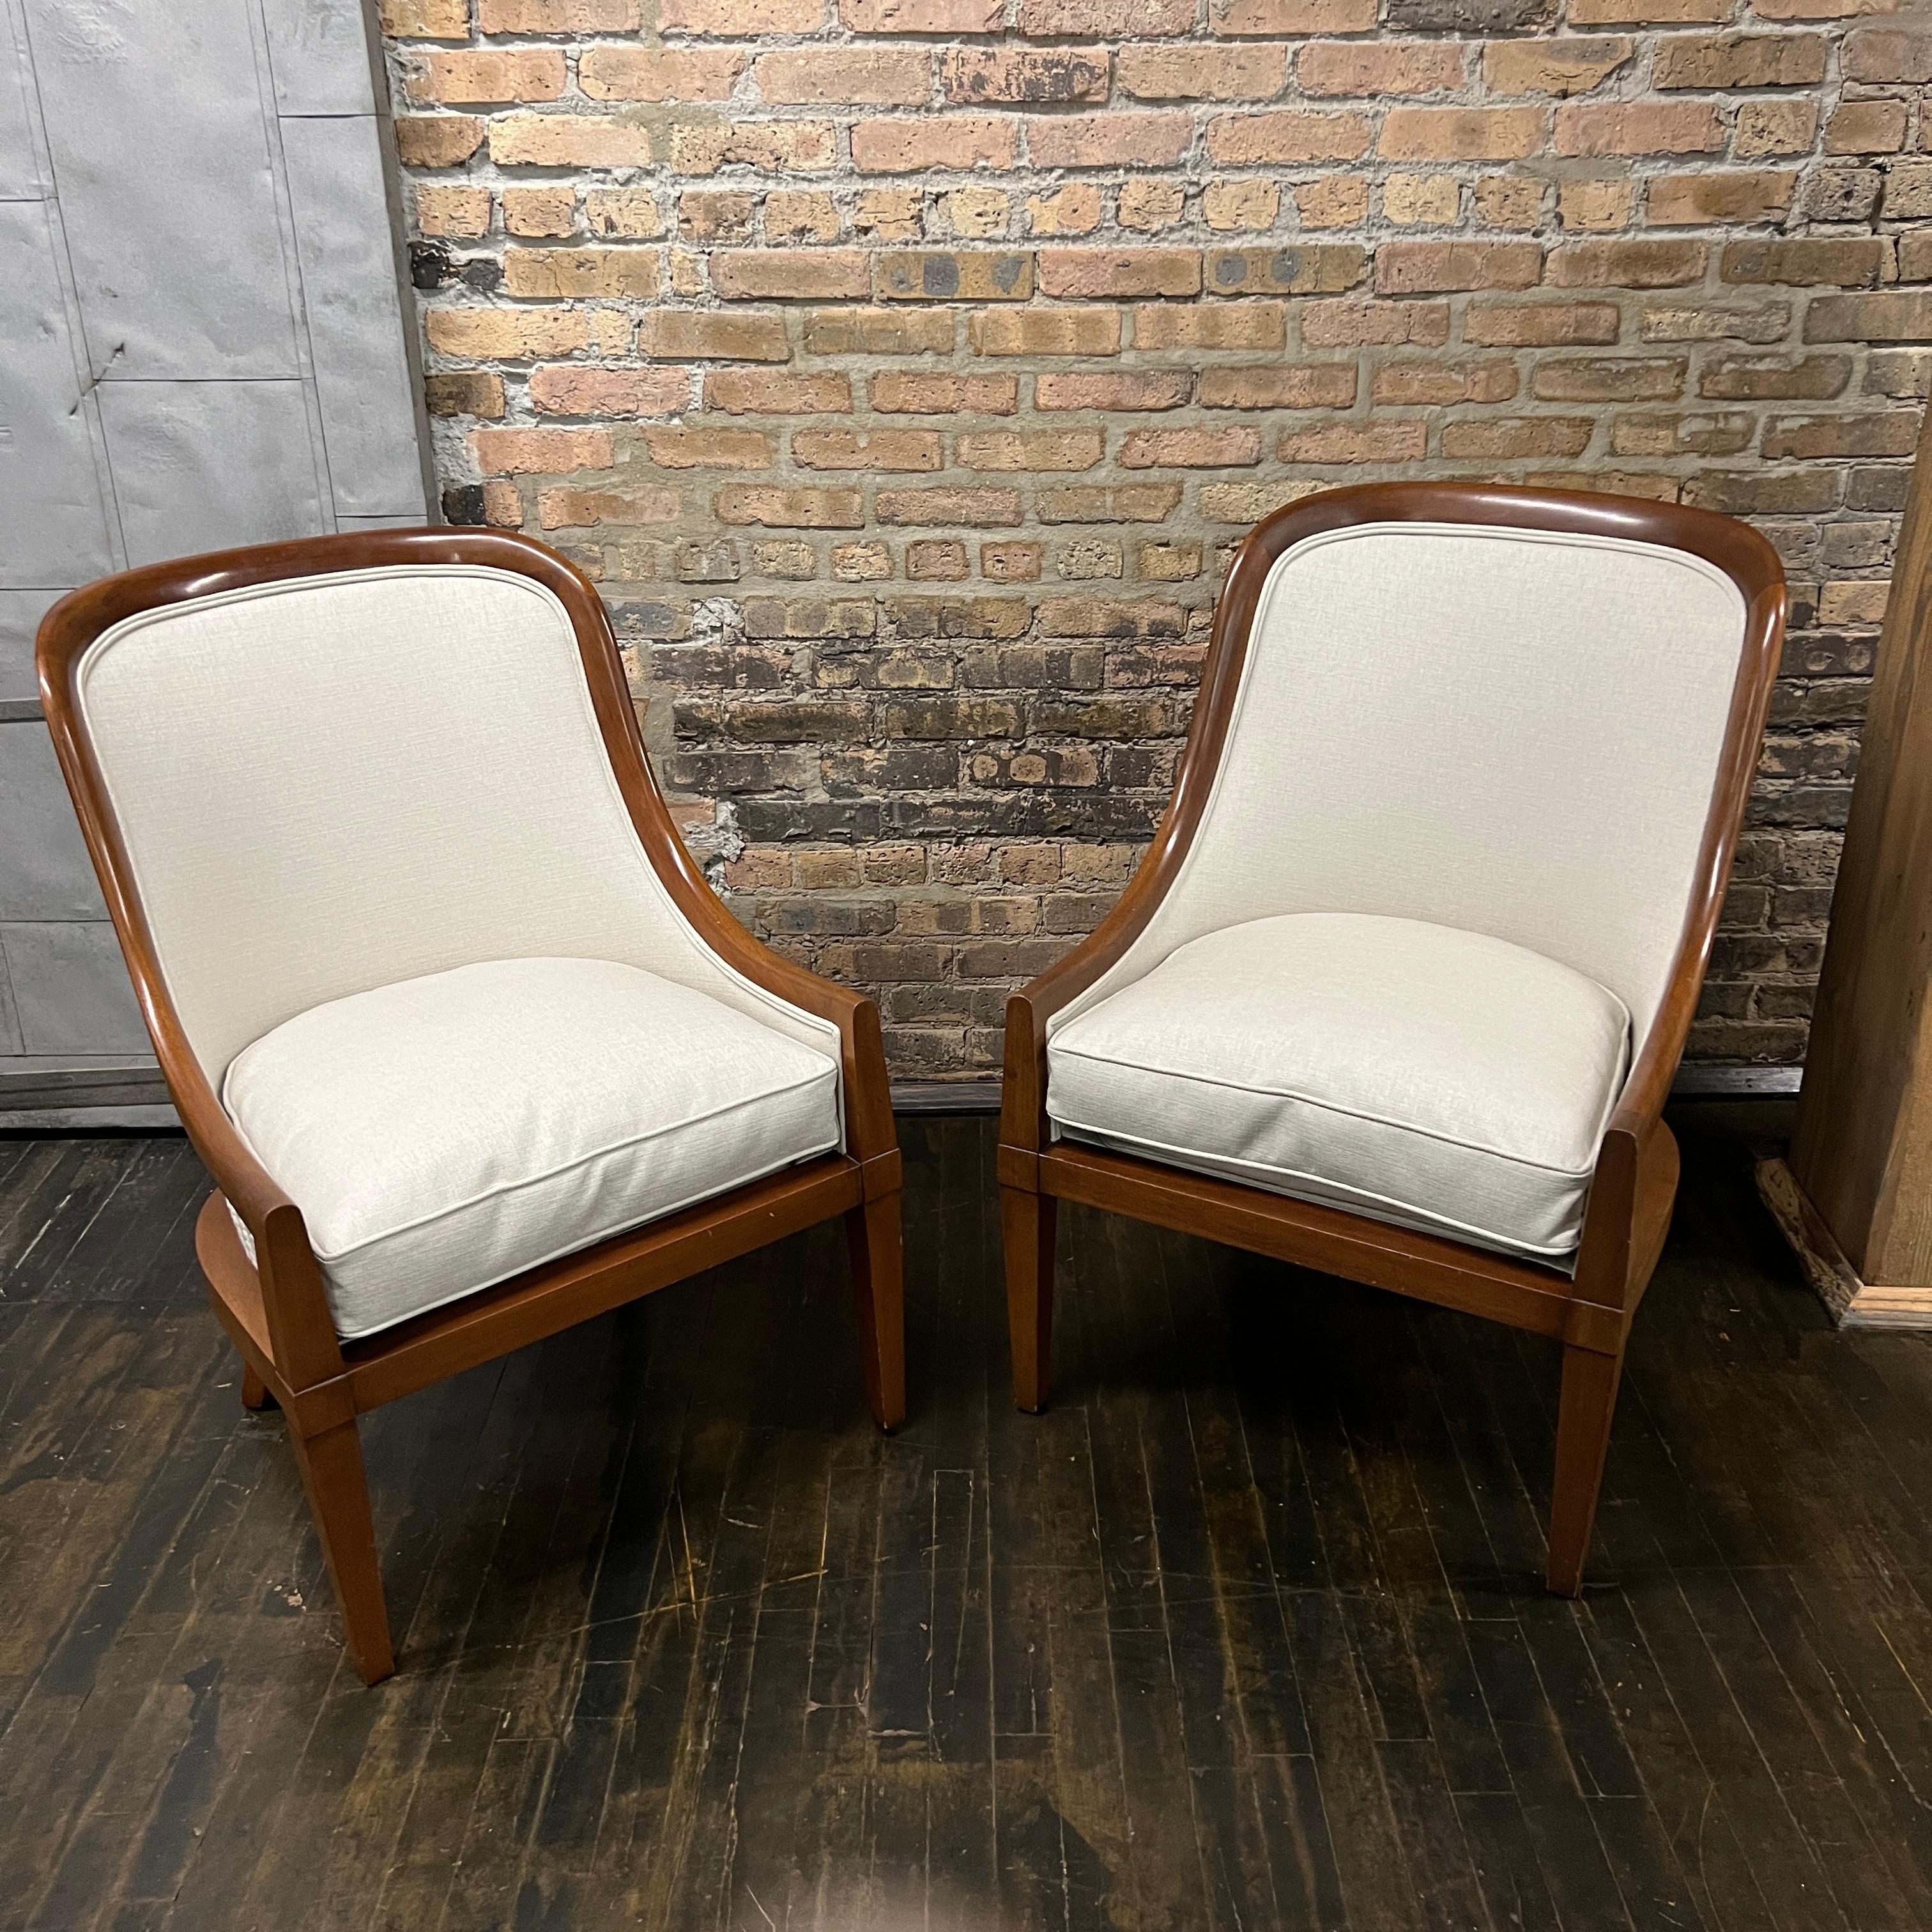 Ces magnifiques chaises sont dotées d'un cadre en noyer massif et d'un revêtement en lin gris très clair (sur le devant de la chaise et les coussins d'assise).  Les coussins d'assise sont garnis de duvet.  Le dossier de la chaise est revêtu d'un